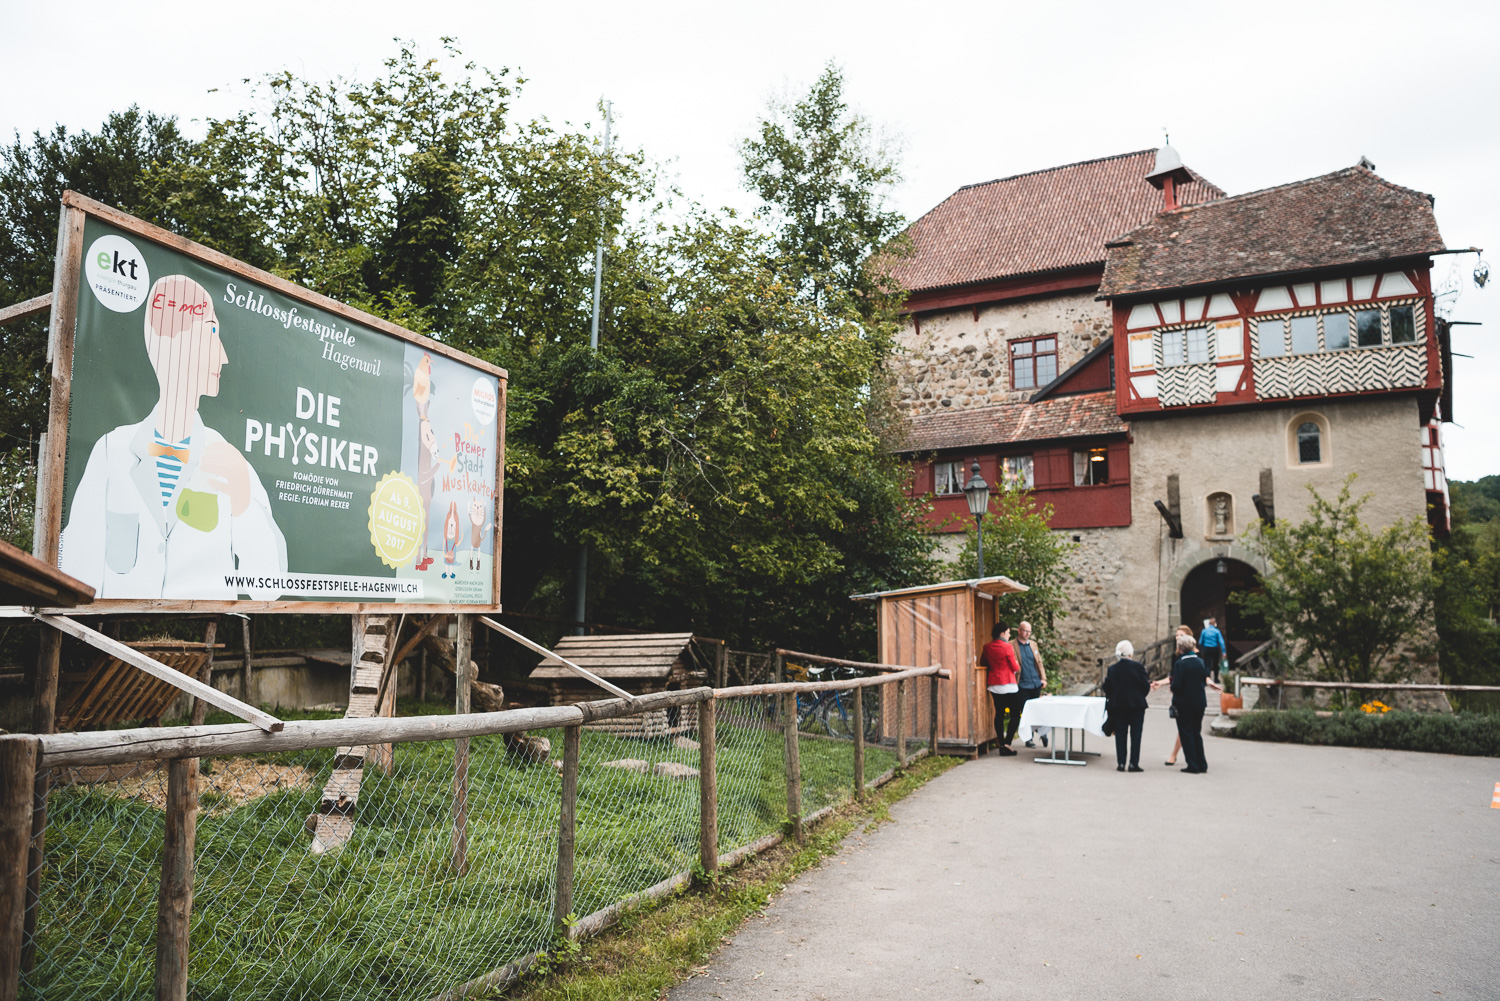 Schlossfeststpiele im Schloss Hagenwil